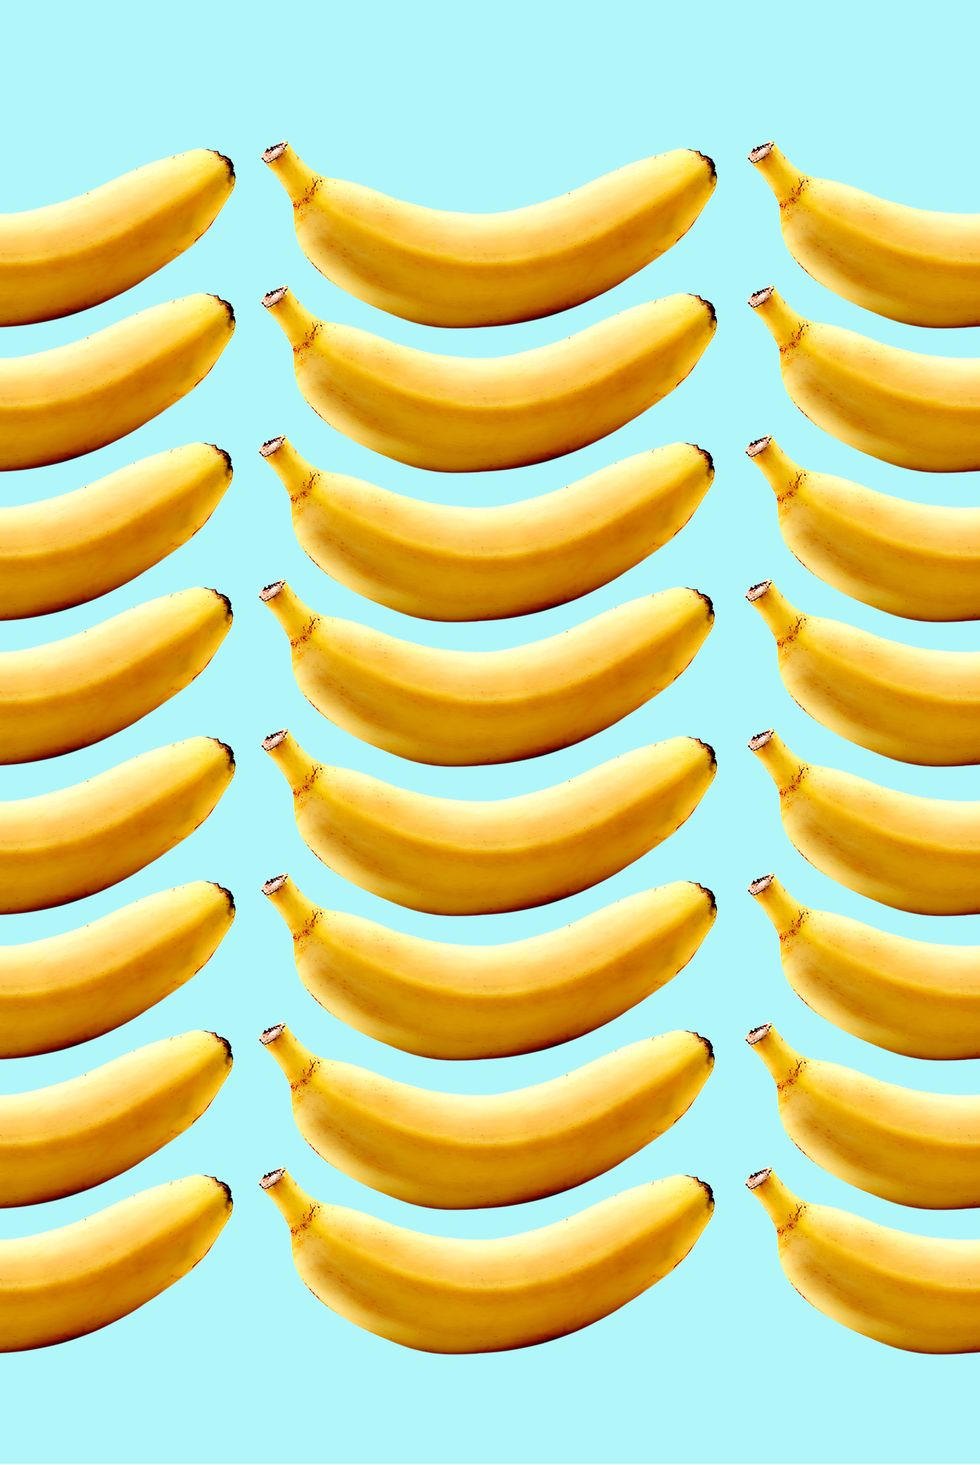 potassium rich foods to stop bloat